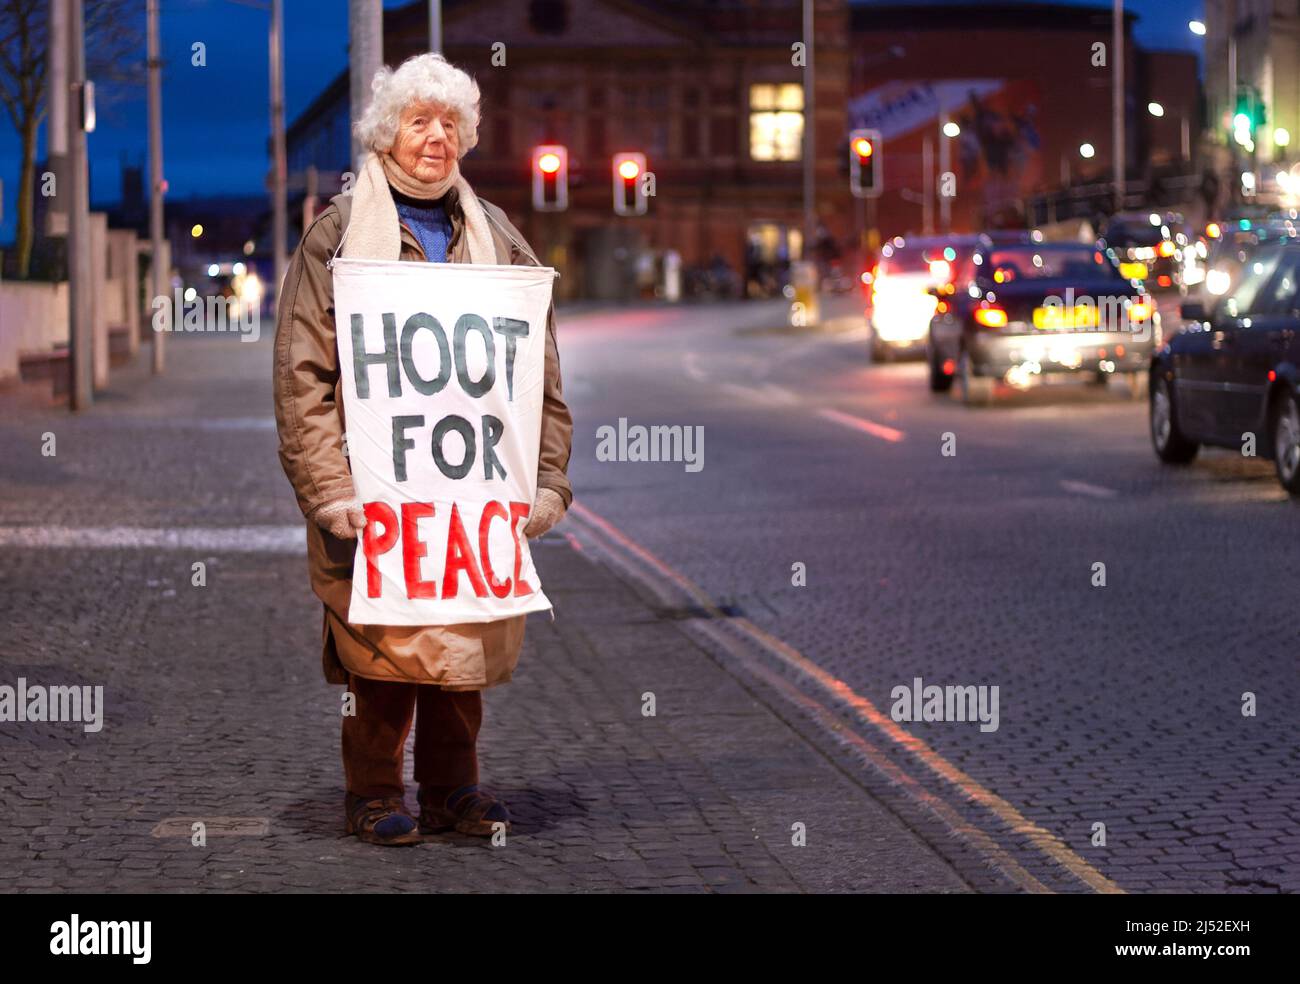 Hoot for Peace, activista, Lois Atherden, de 90 años, espera en su lugar habitual en el centro de Bristol, Reino Unido, frente a conductores que se aproximan Foto de stock